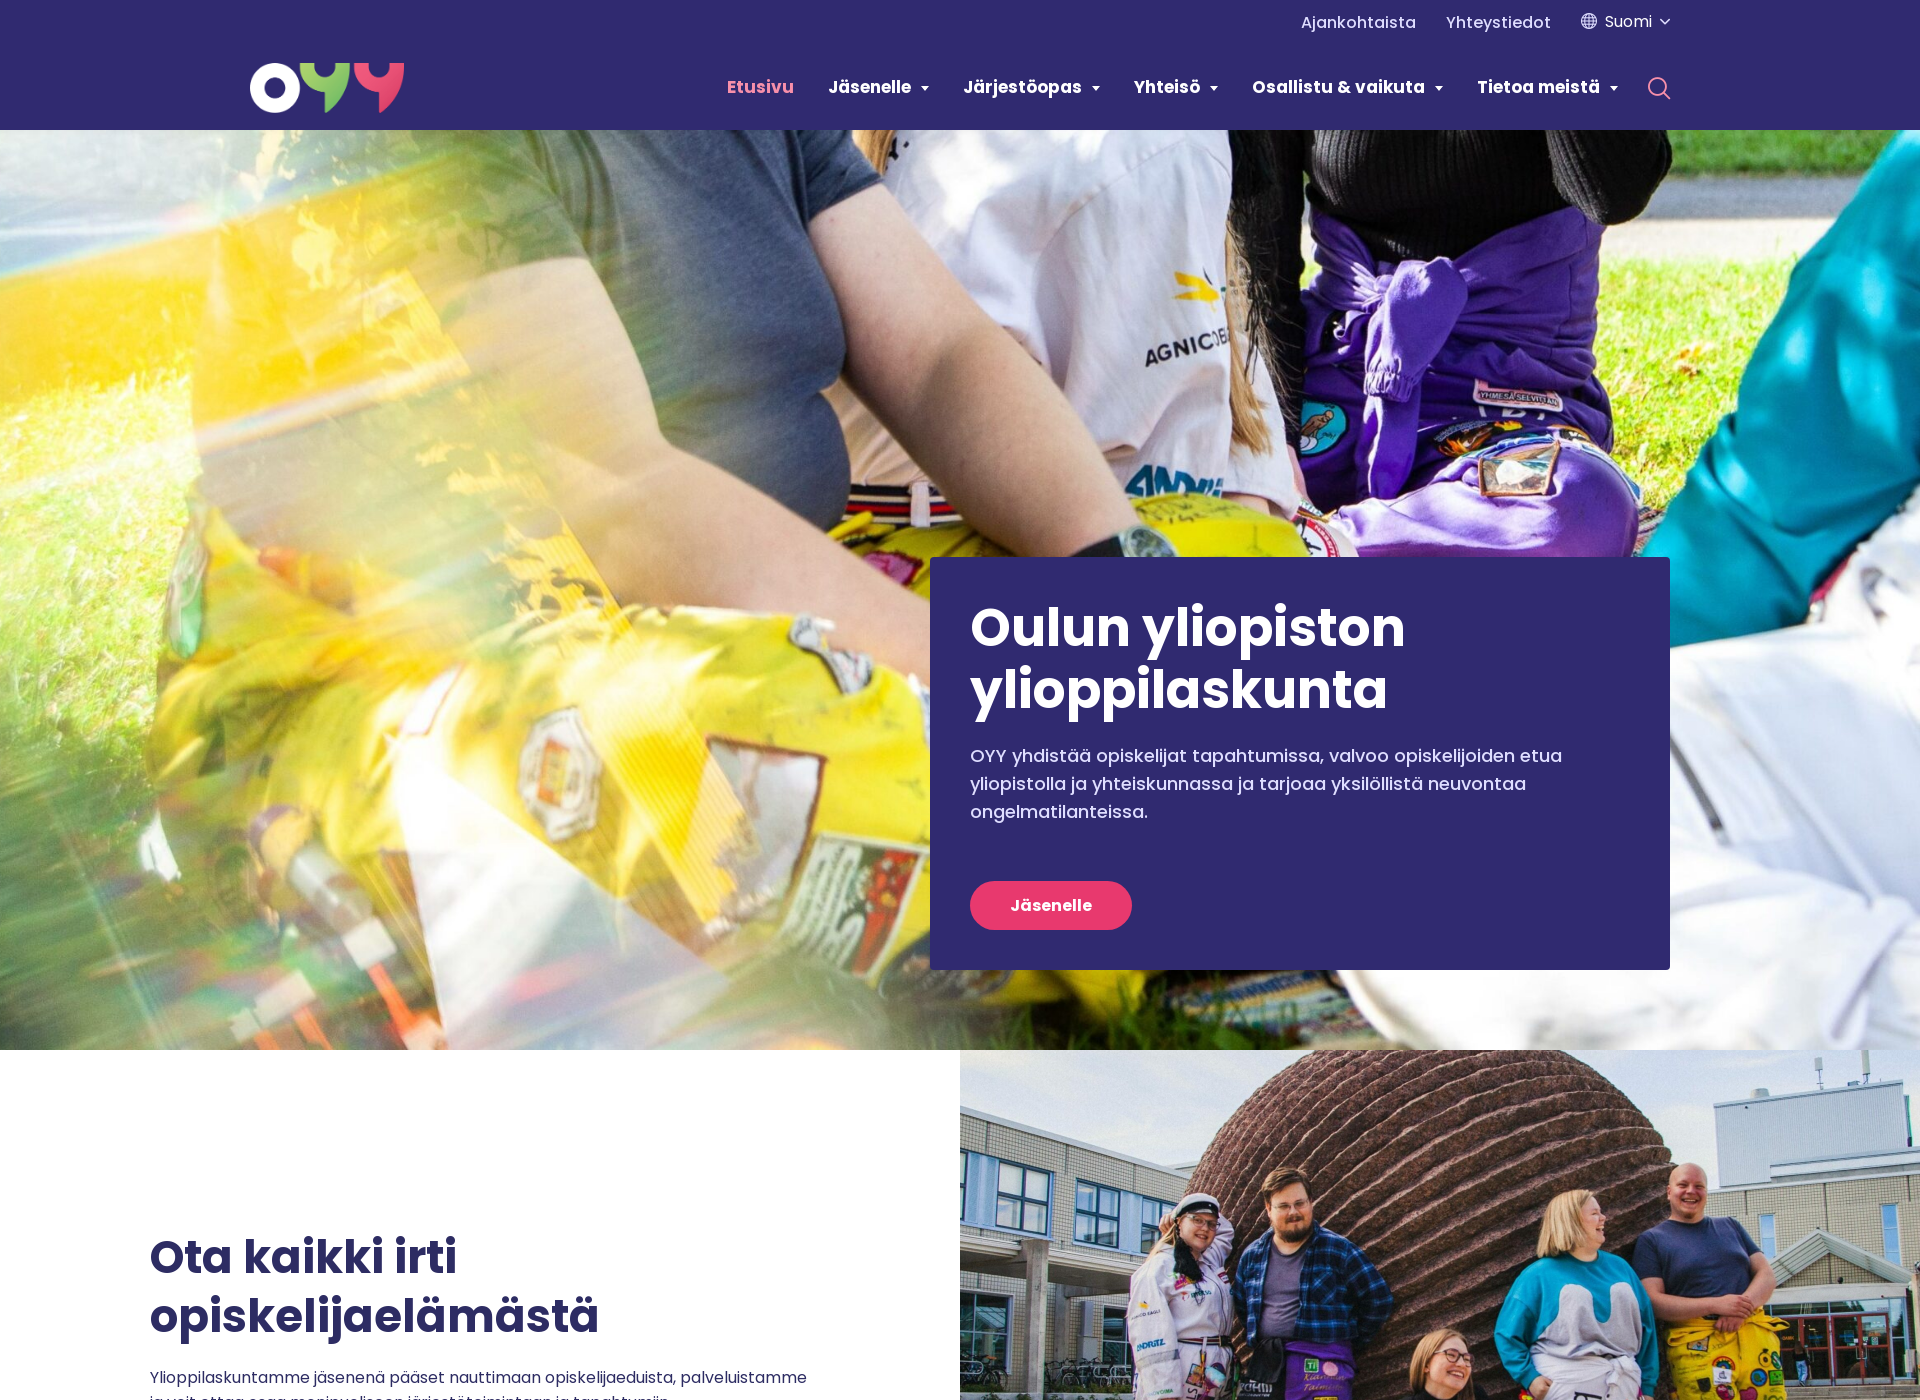 Näyttökuva oyy.fi